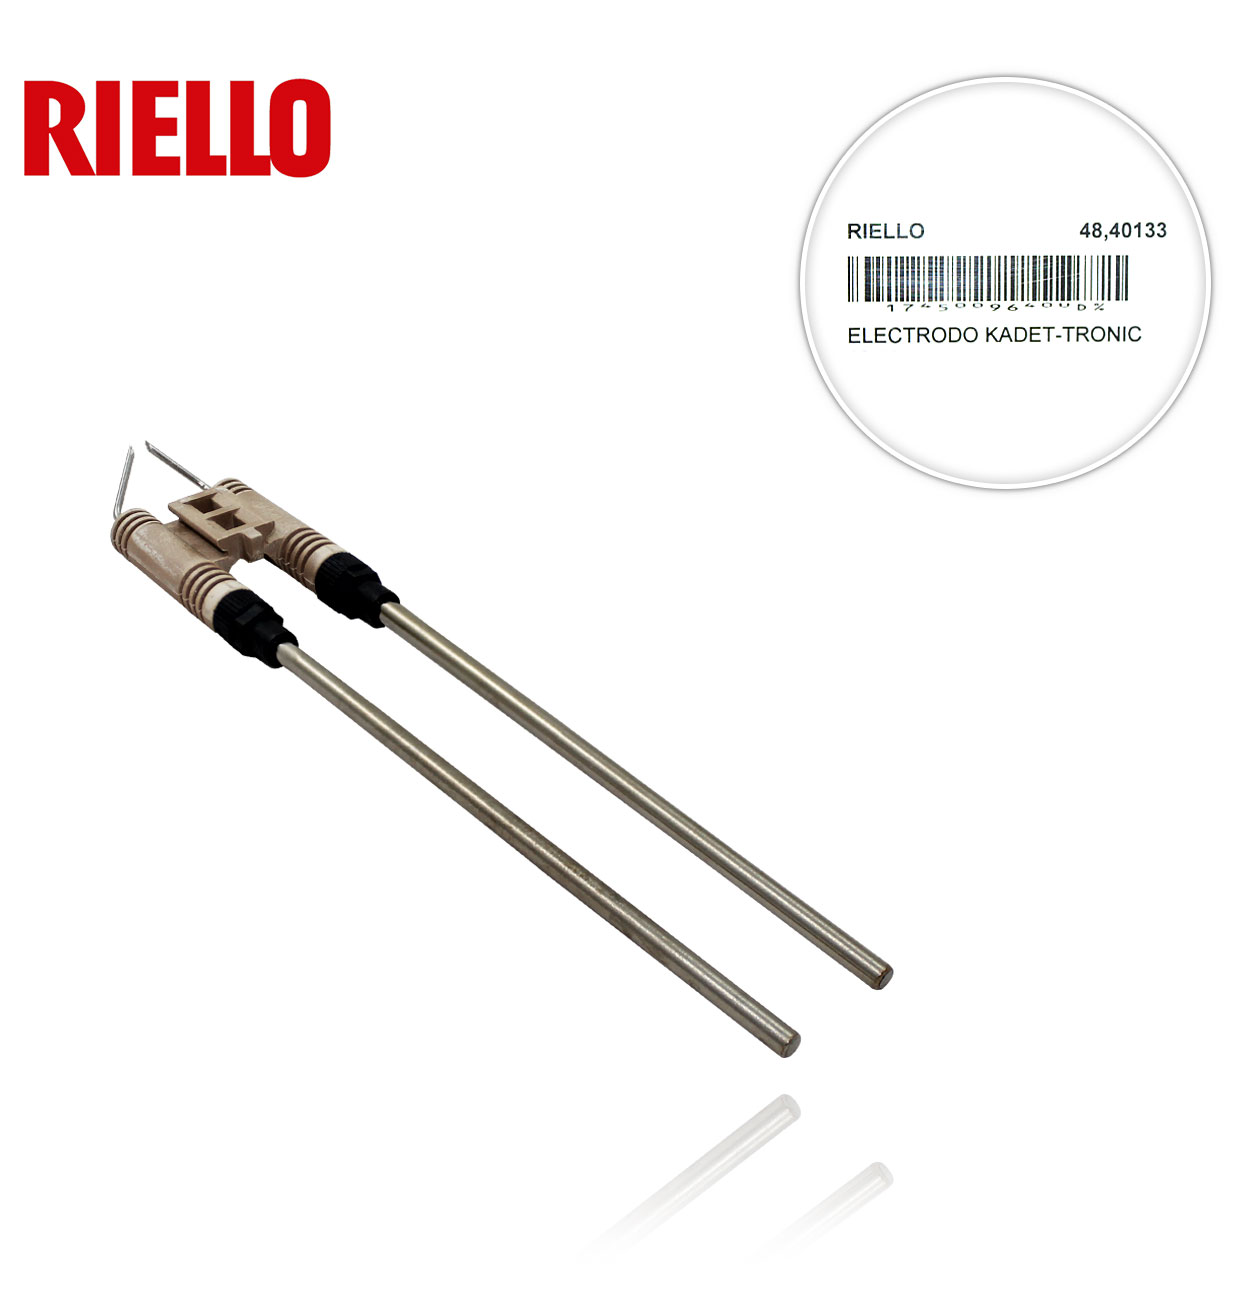 RIELLO 3005790 10/ 10L KADET-TRONIC ELECTRODE